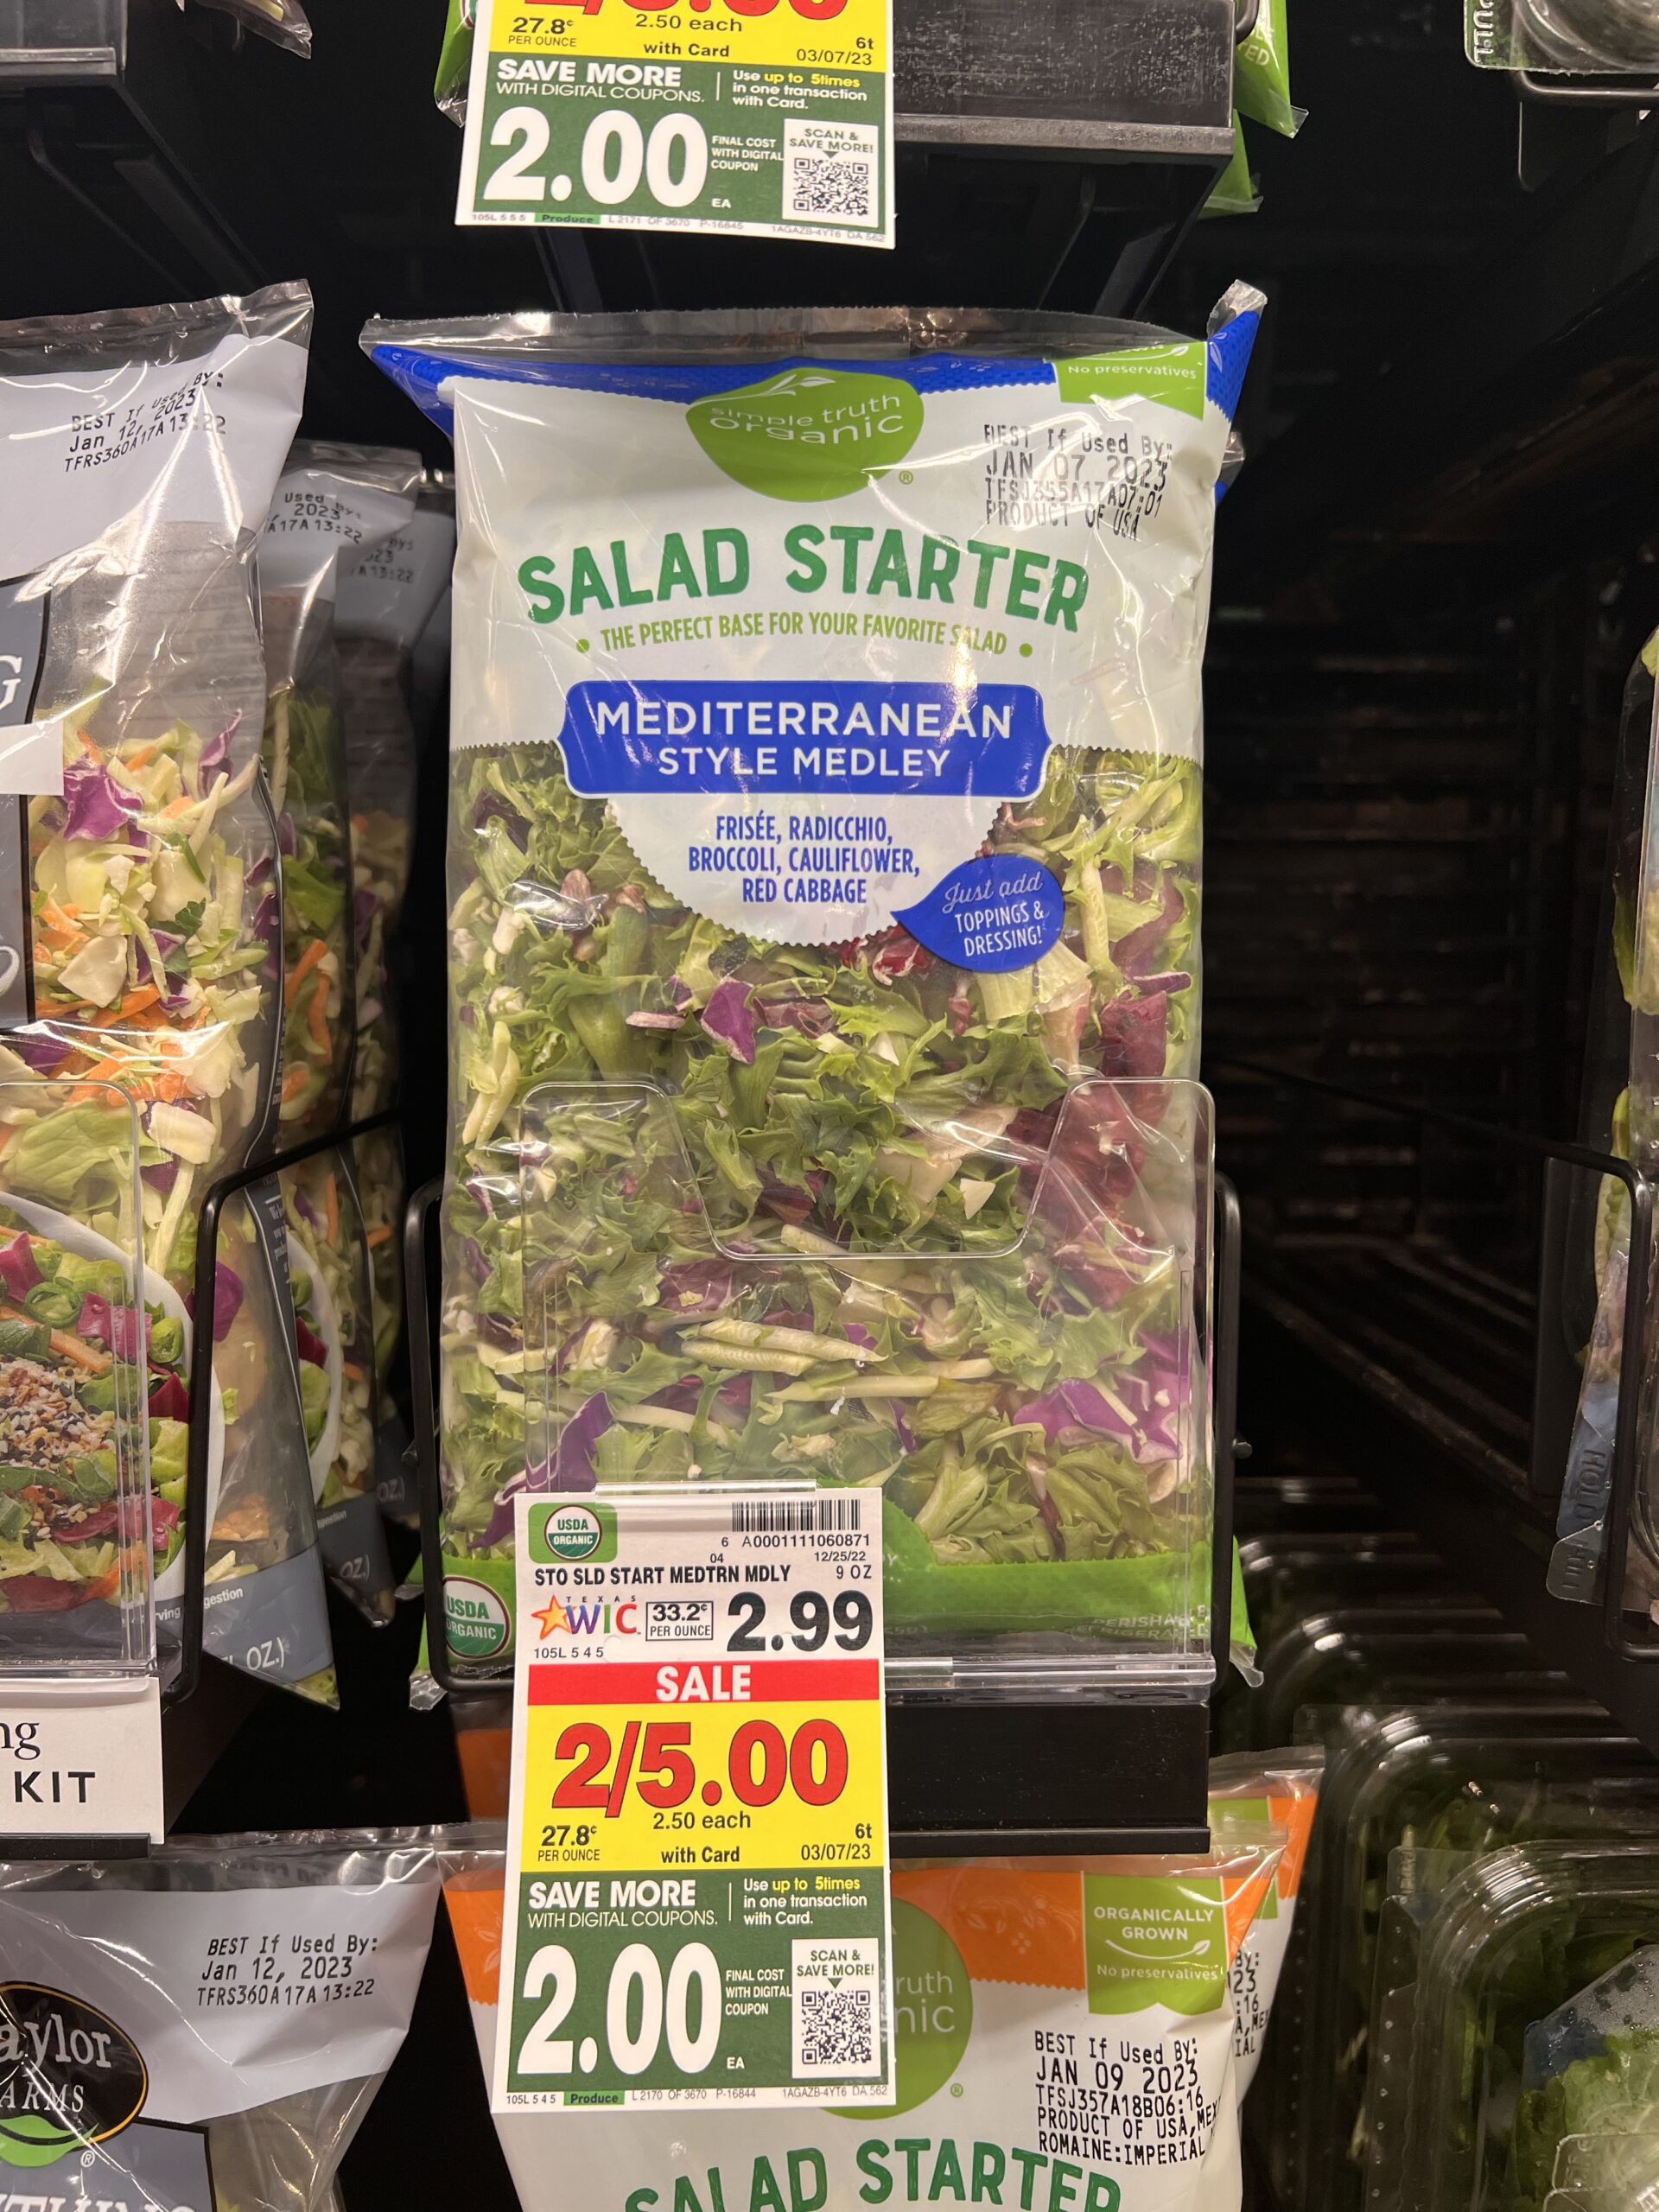 STO salad starter kroger shelf image 2